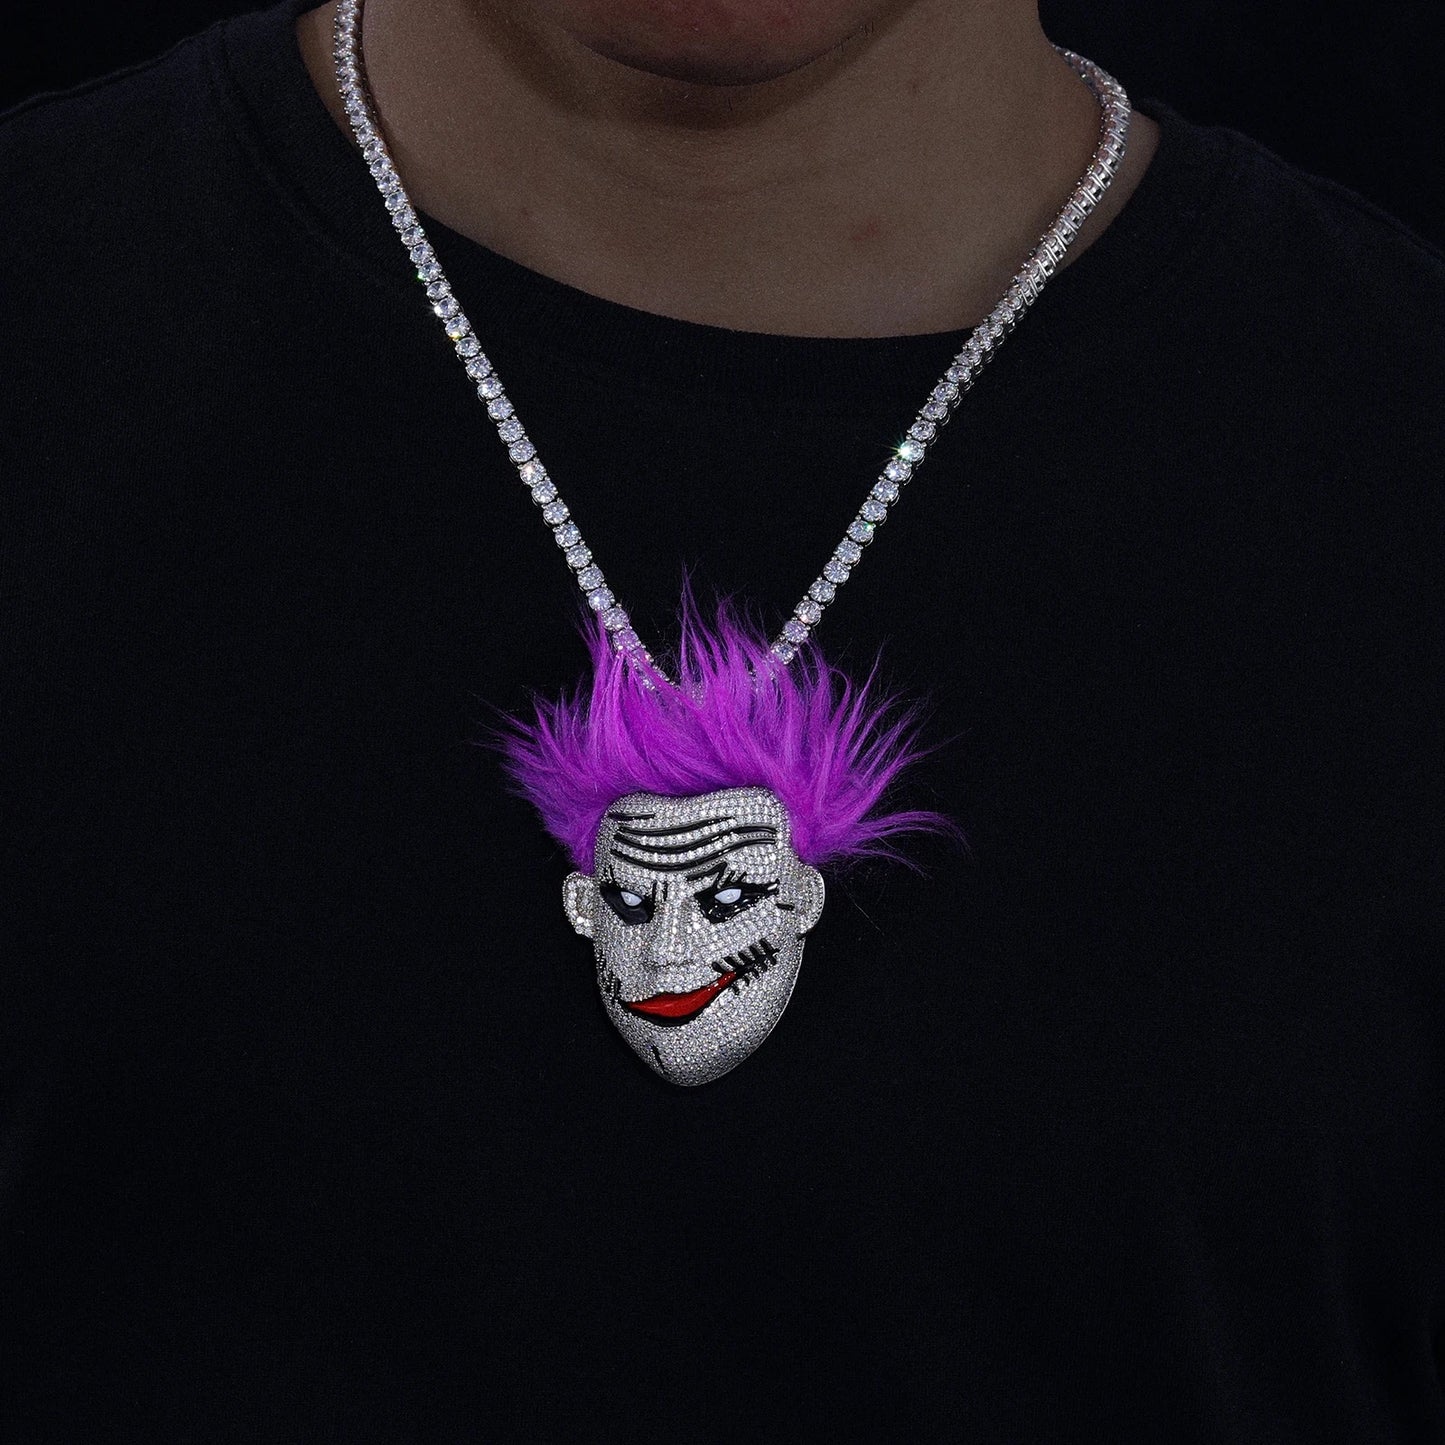 Joker face pendant with moissanite diamonds